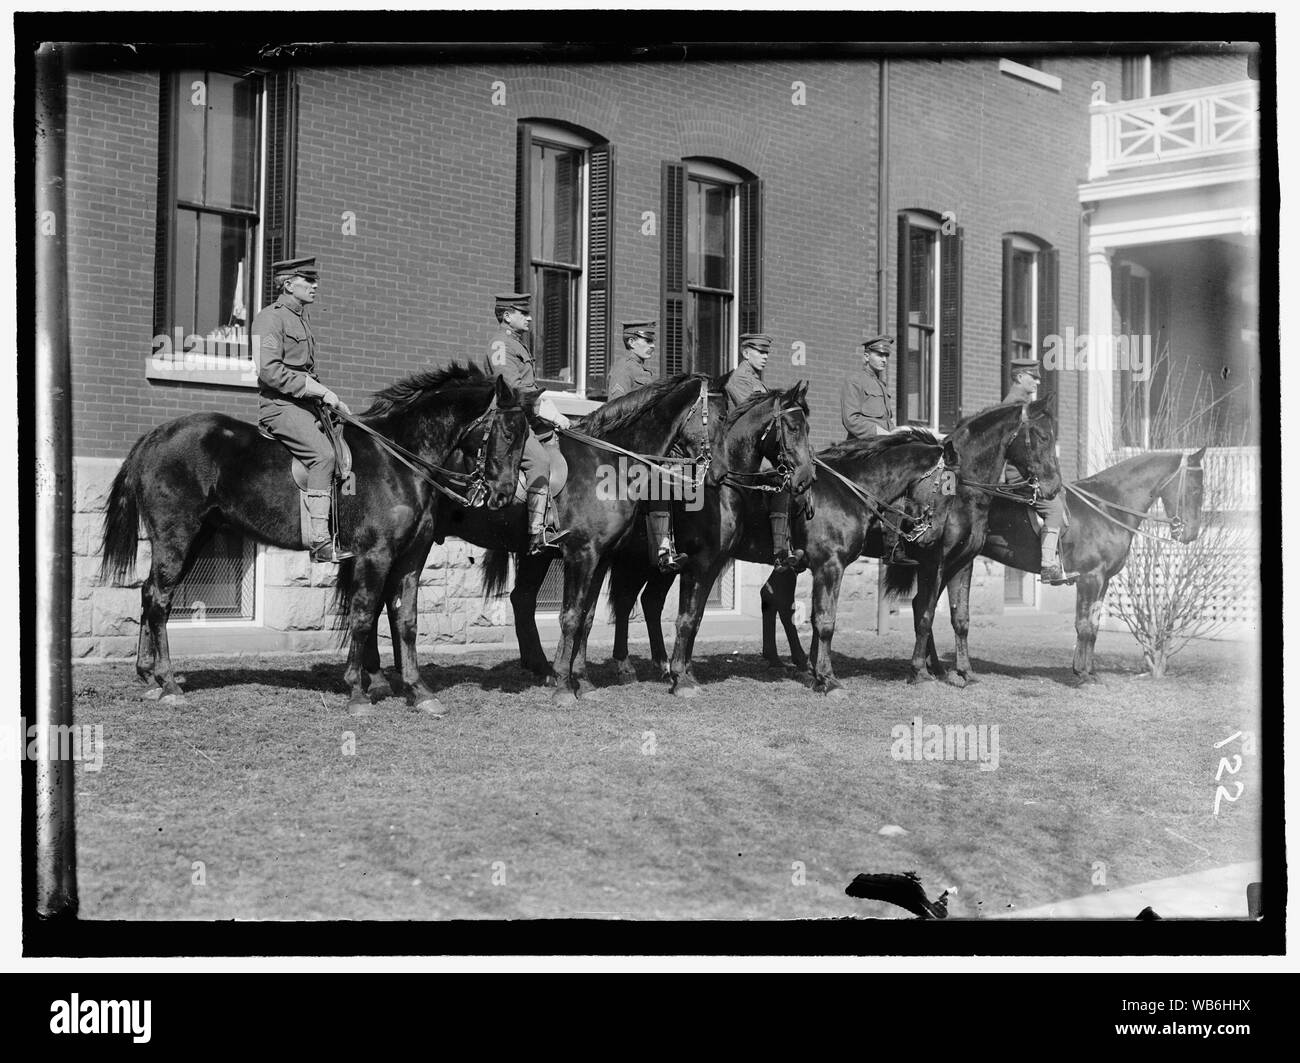 FORT MYER. Gruppo non identificato di ufficiali a cavallo Abstract/medio: Harris & Ewing collezione fotografica Foto Stock